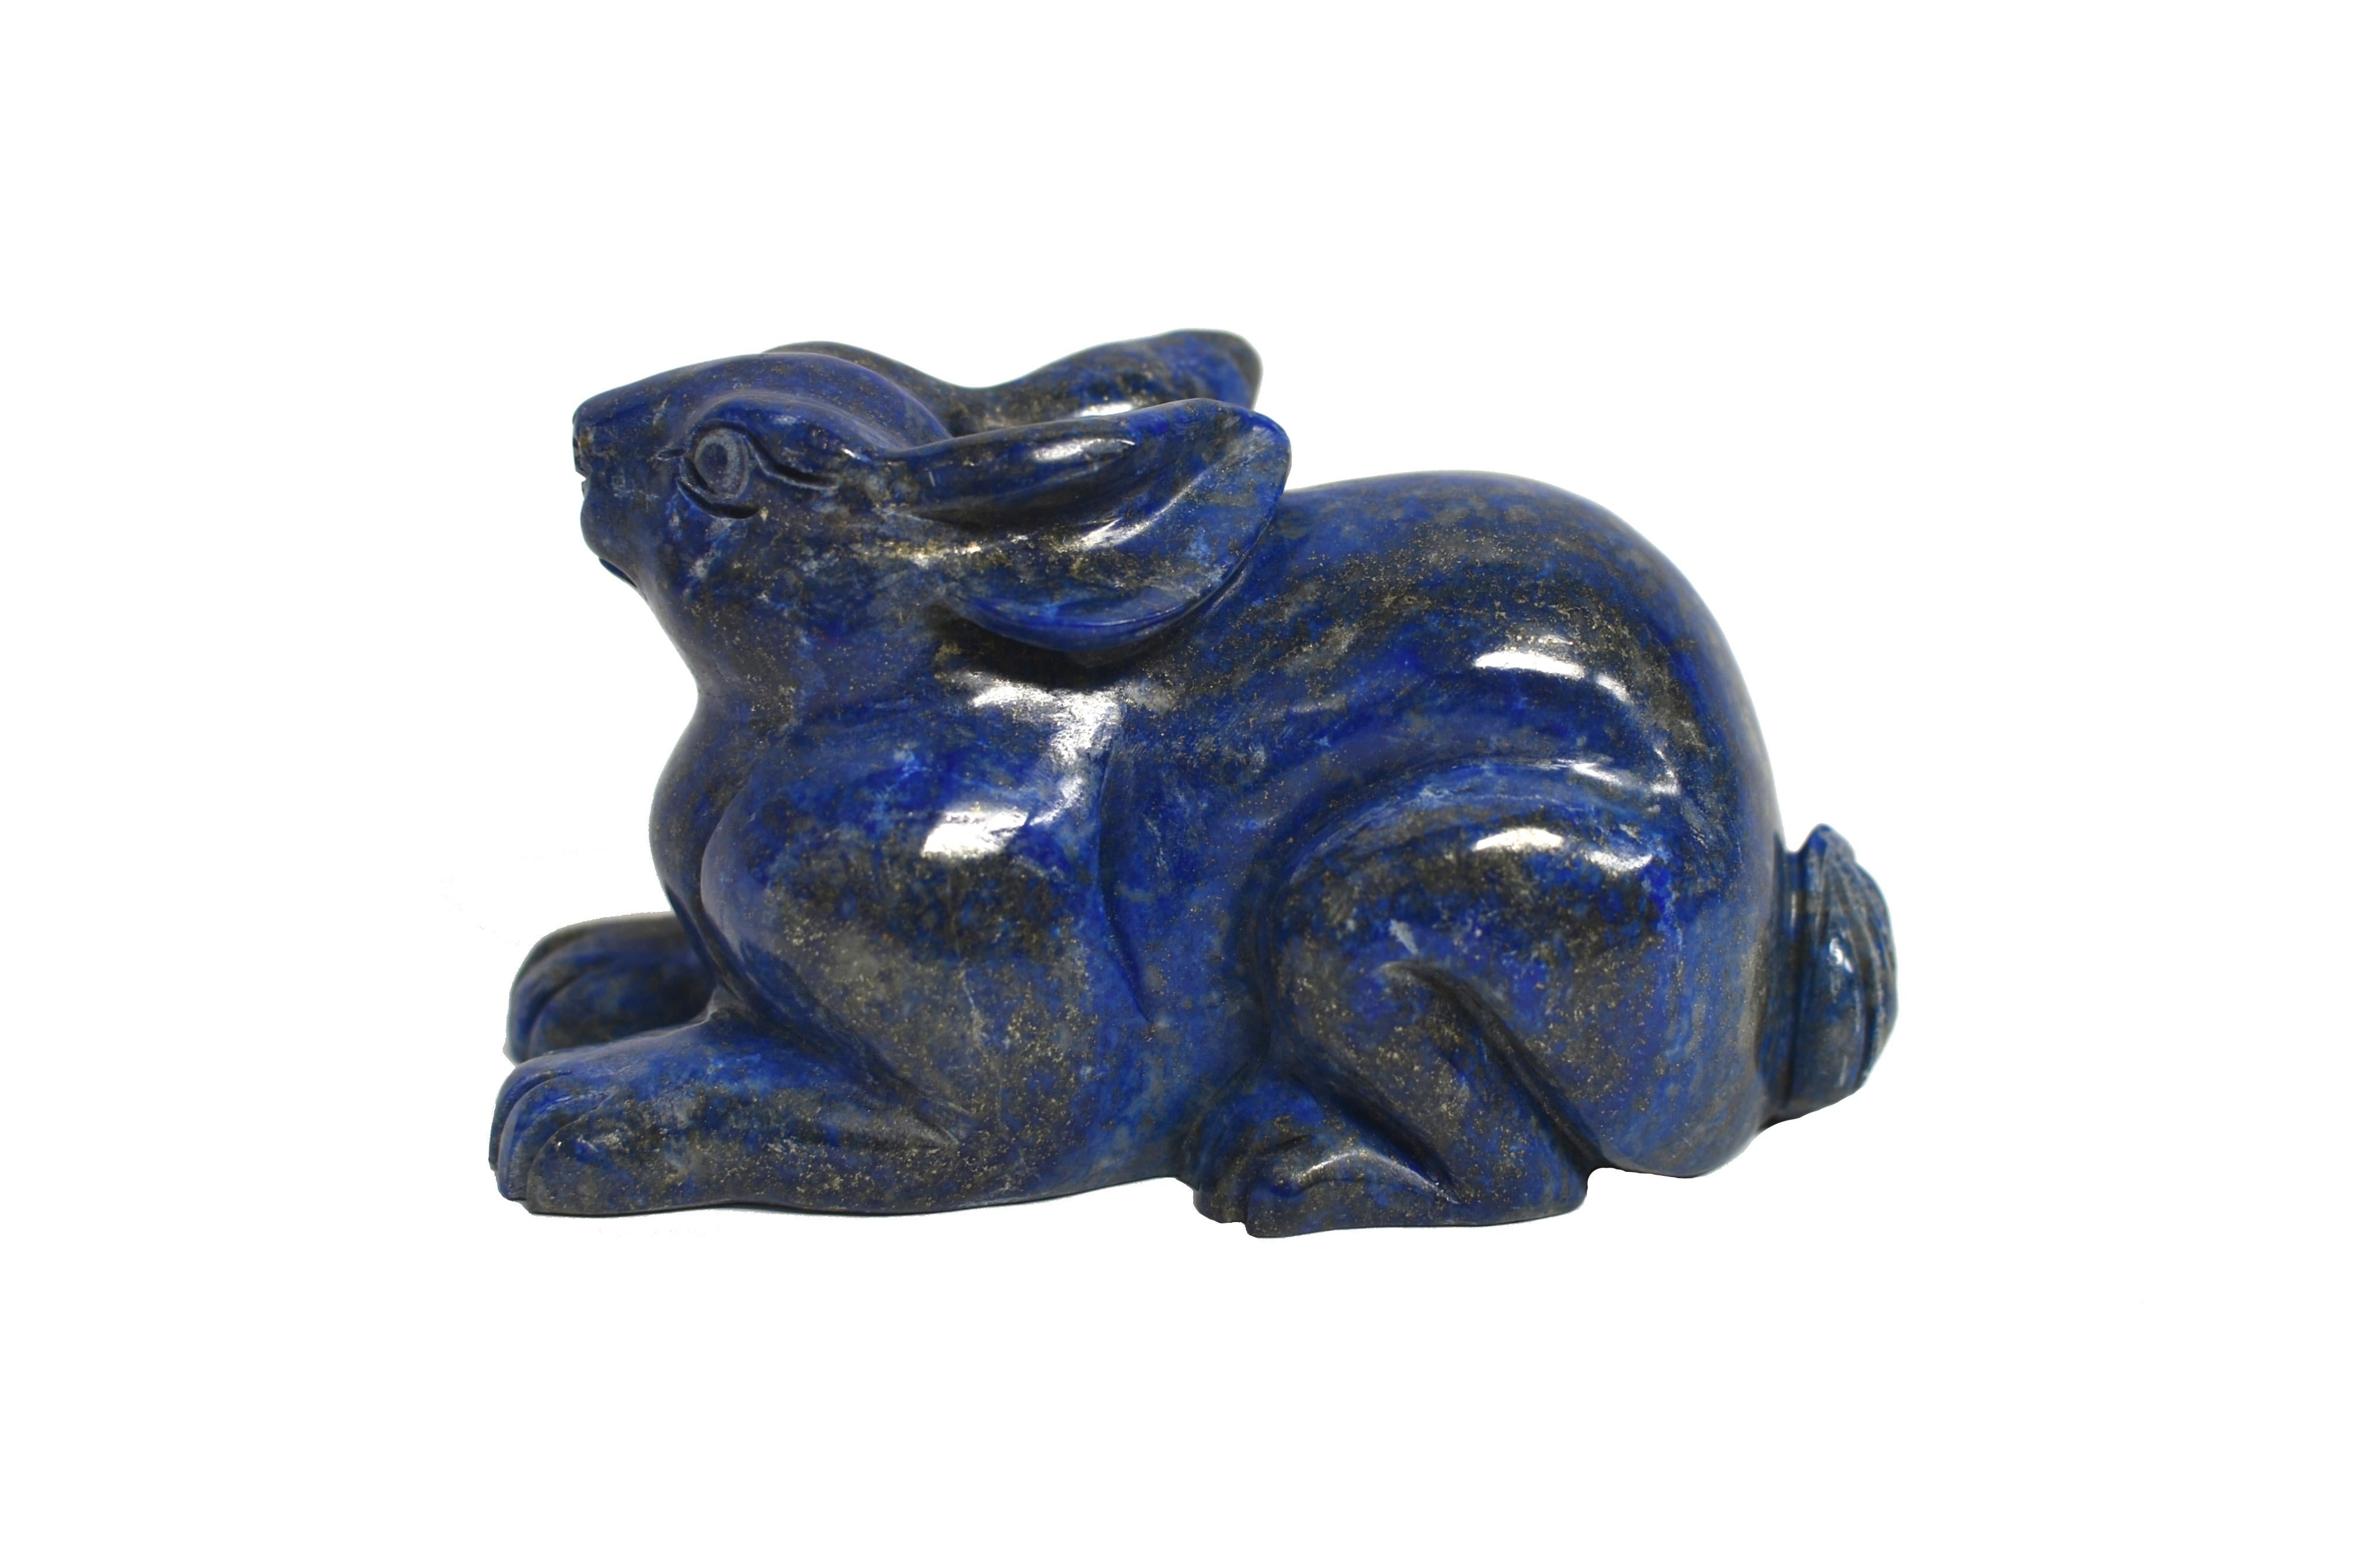 Pour l'année du lapin, nous vous présentons un lapin en lapis-lazuli naturel de qualité AAA, finement sculpté. Le lapin se repose sur ses pattes, les oreilles tirées en arrière. Avec une expression alerte et inquisitrice. Le Lapis est d'un beau bleu